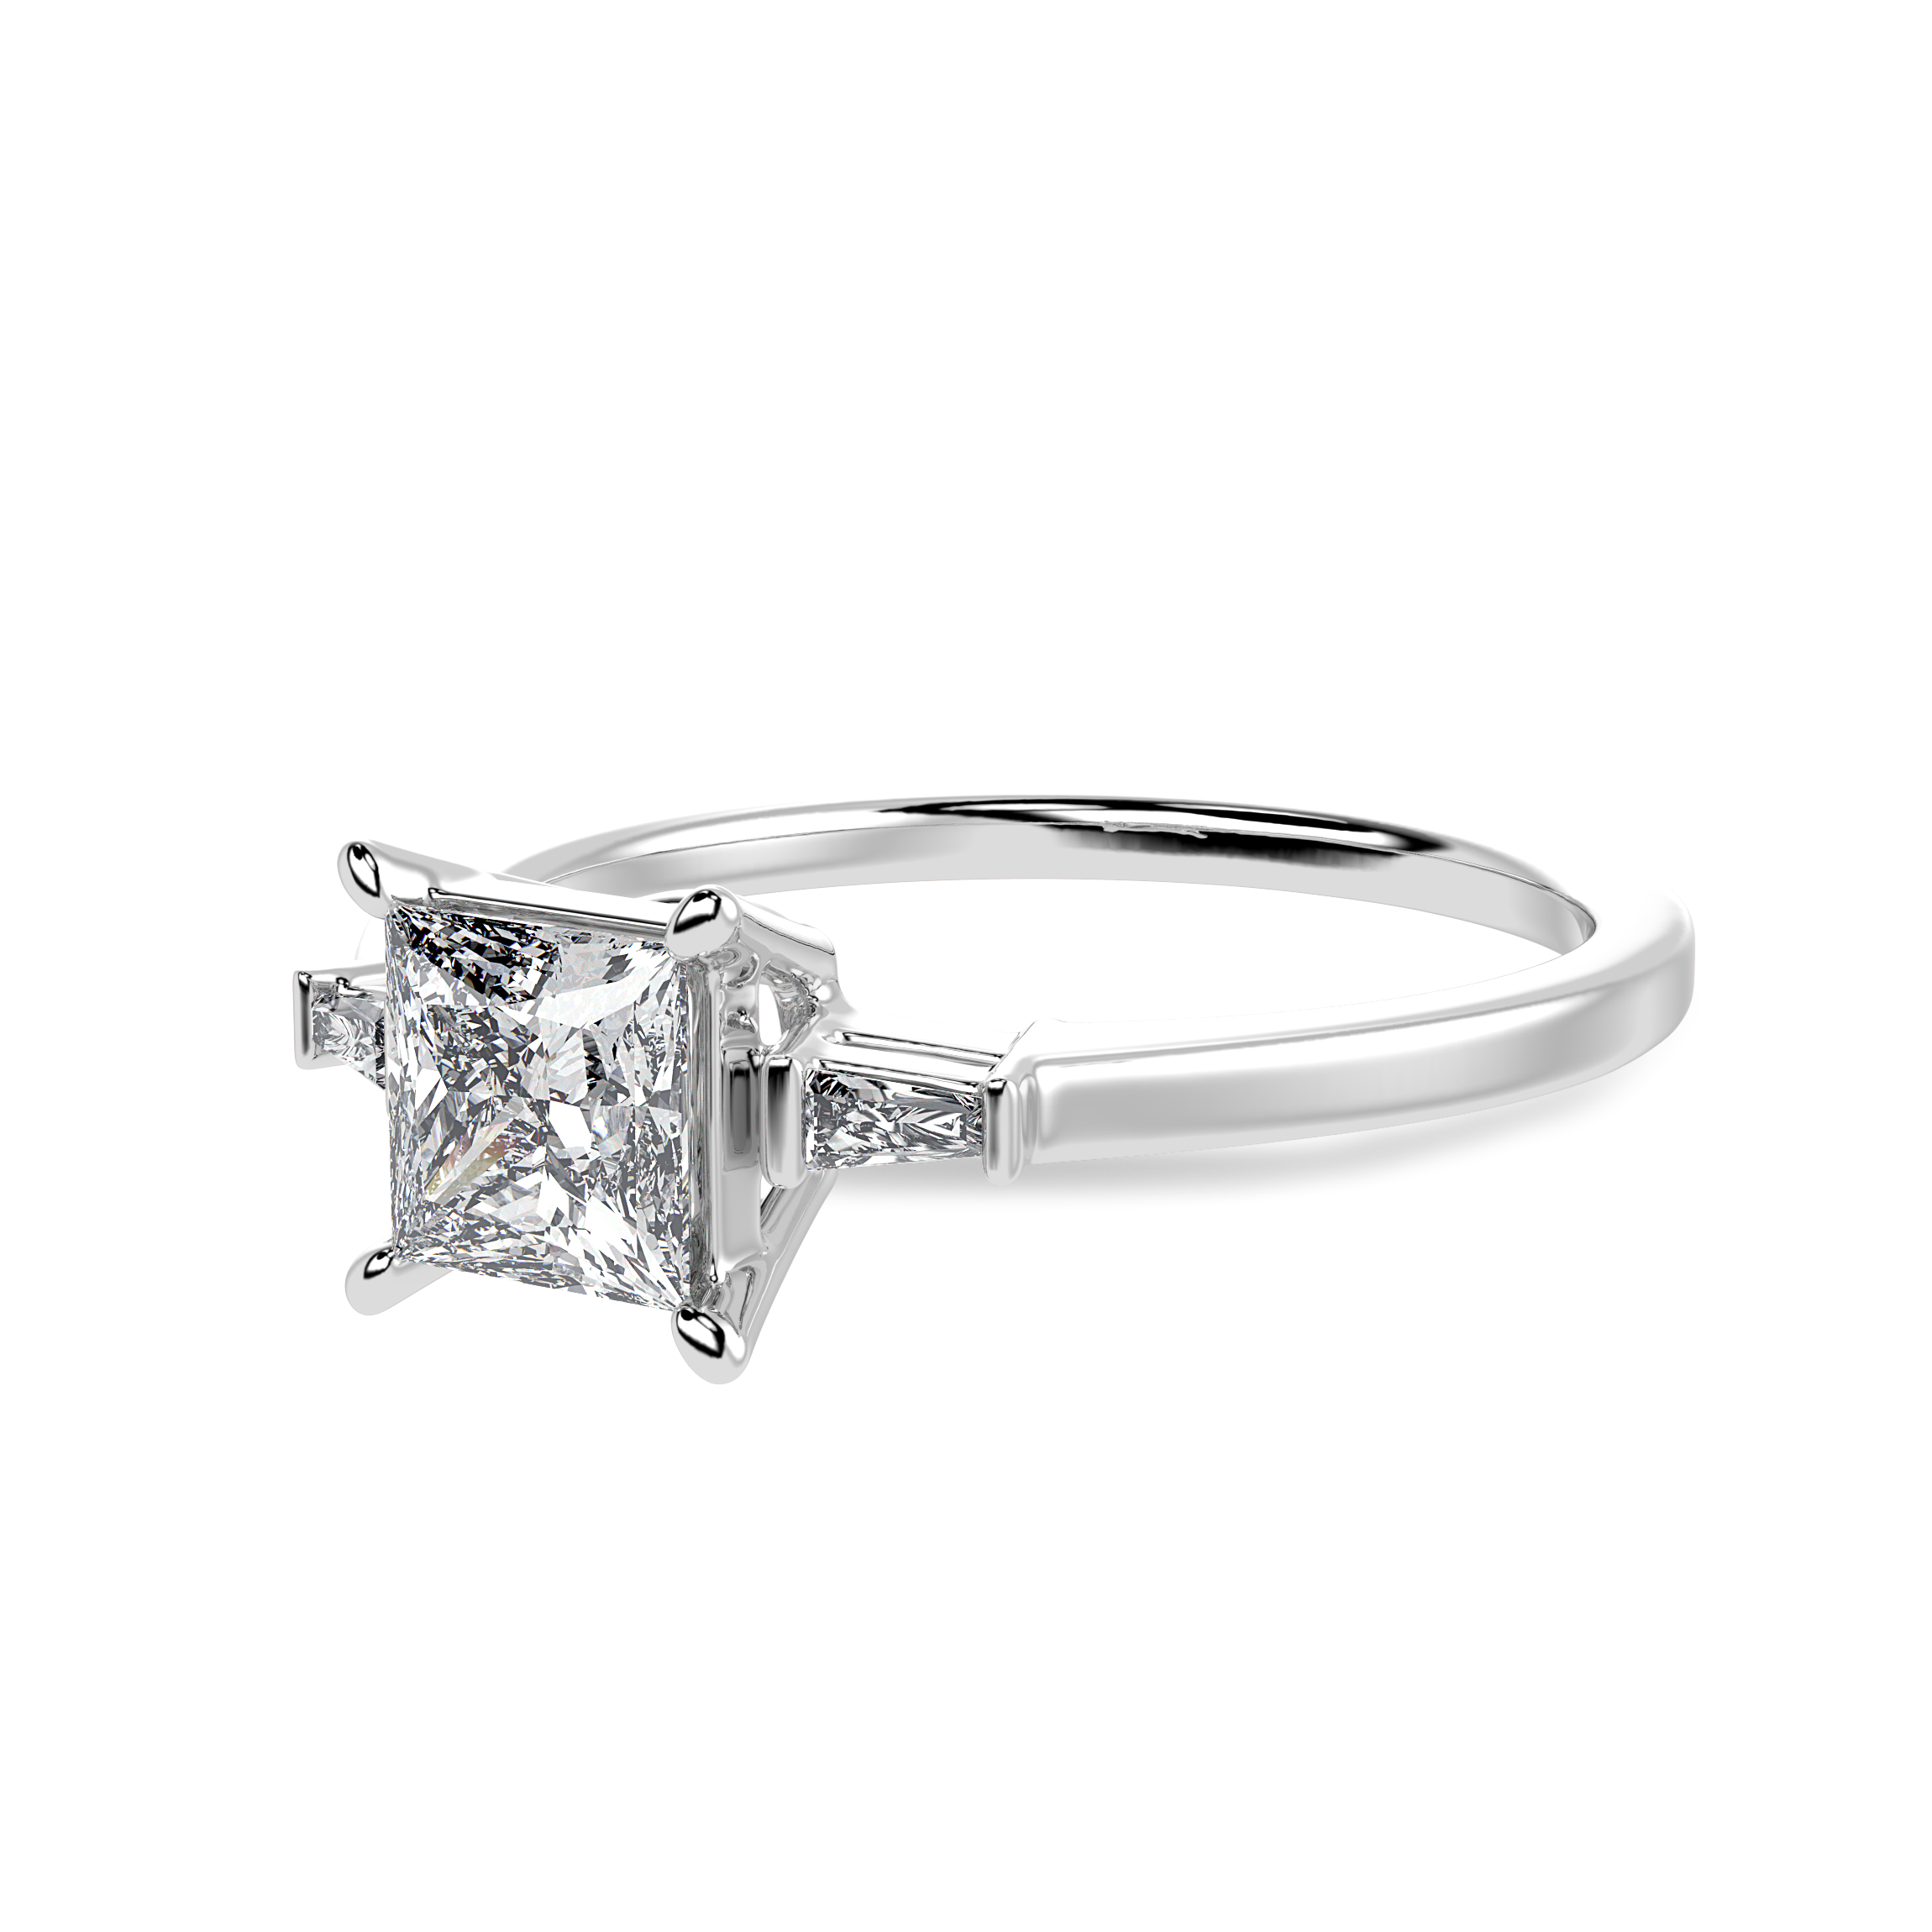 1 Carat Princess Cut Solitaire Baguette Diamond Accents Platinum Ring JL PT 1211-C   Jewelove.US